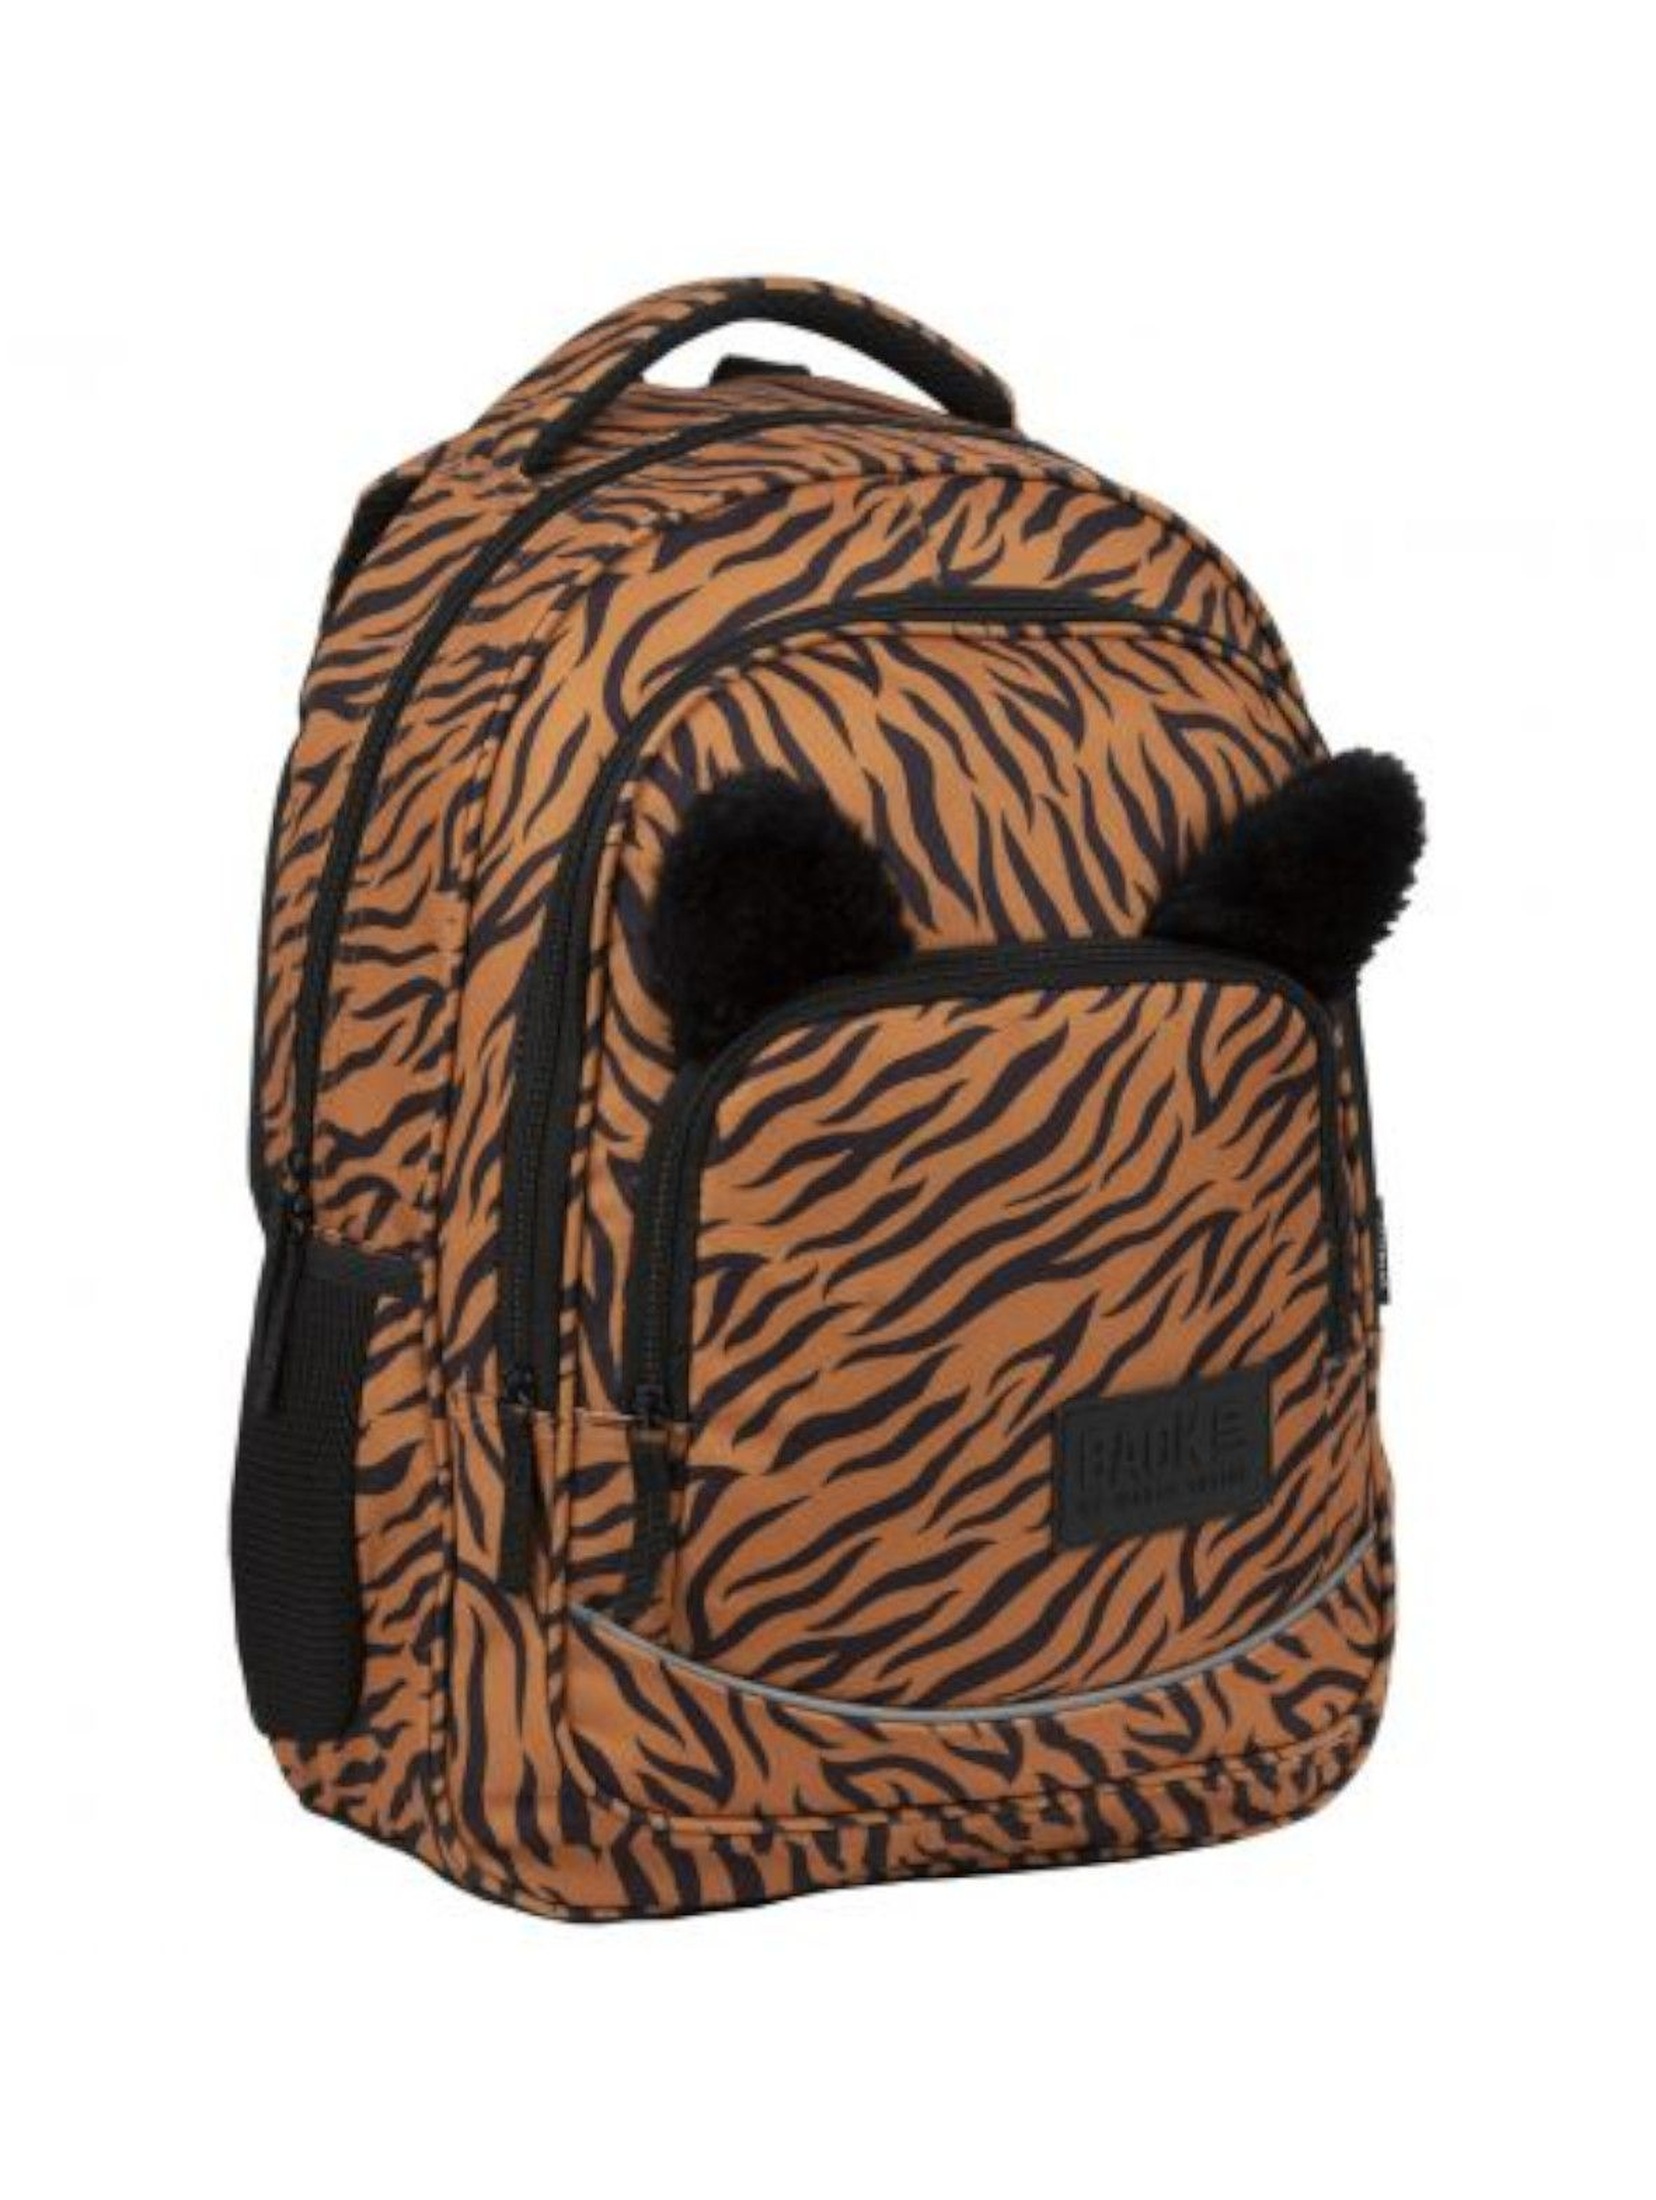 Plecak szkolny  dziewczęcy Tygrys